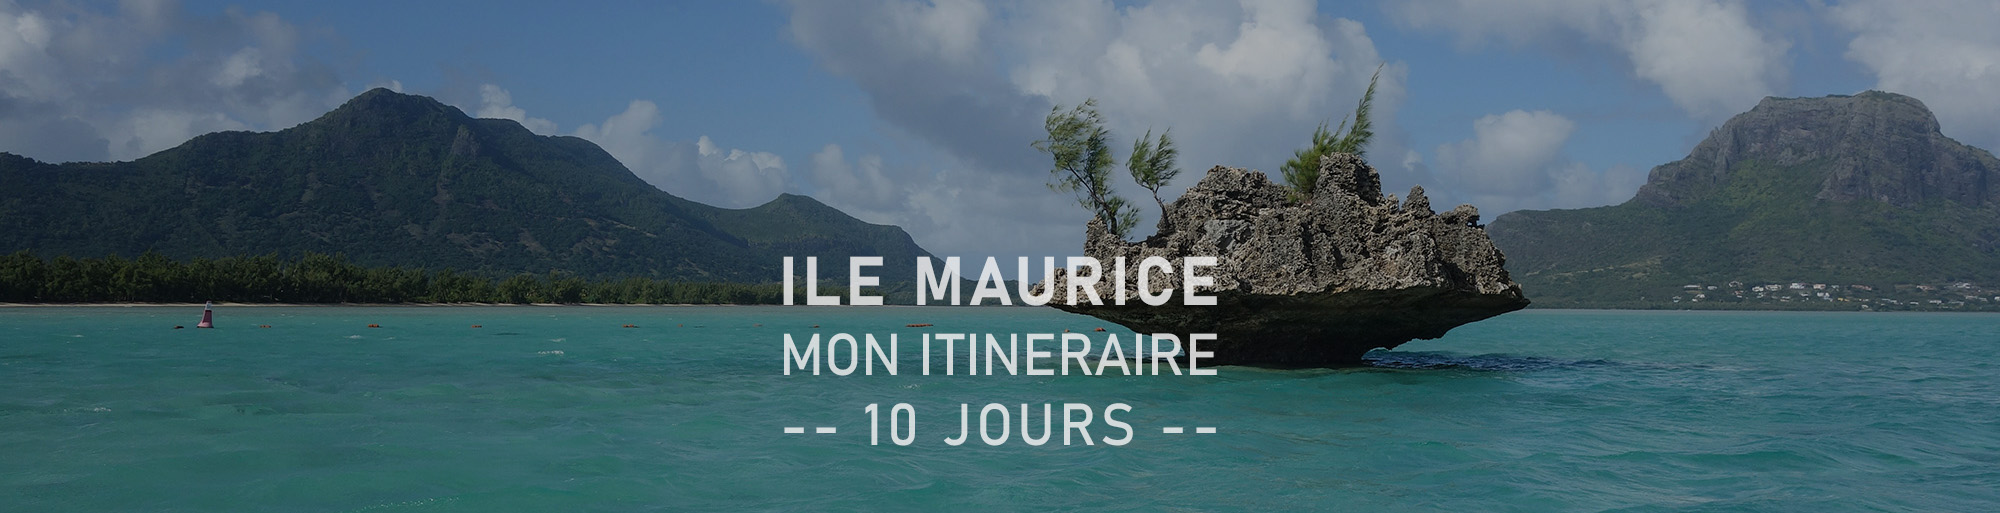 Ile Maurice - Mon itinéraire 10 jours